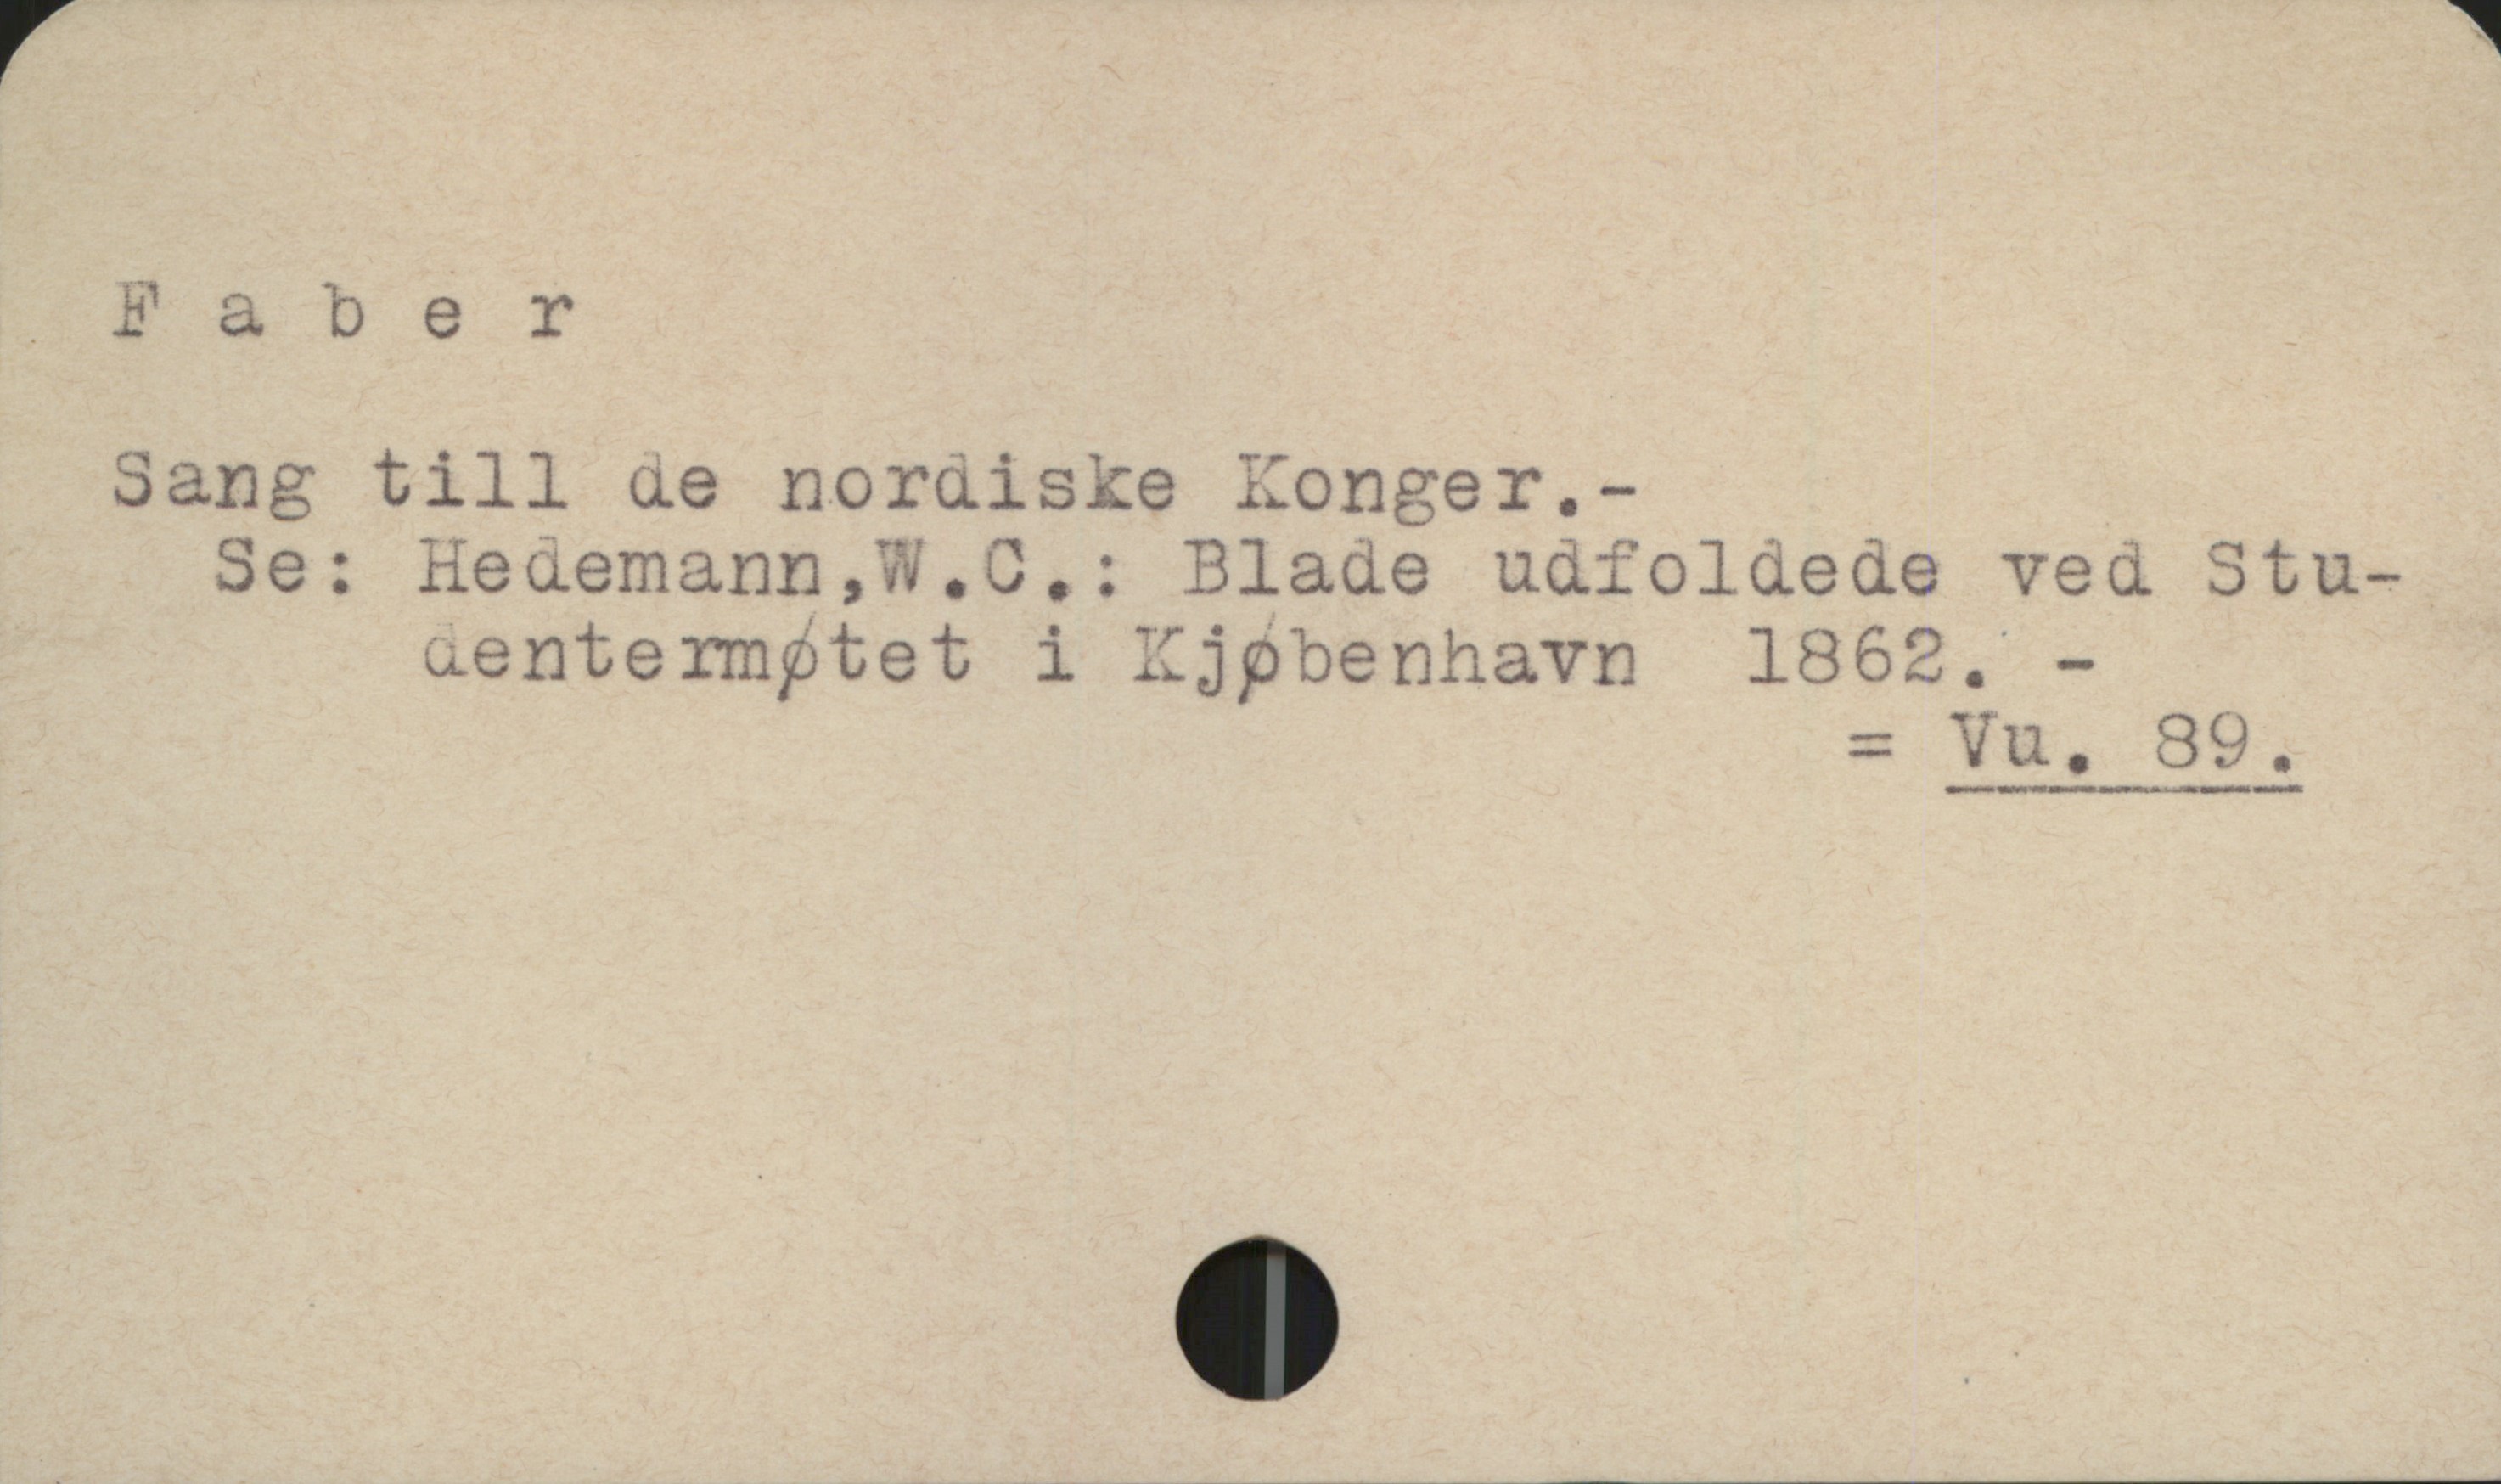 Faber Faber
Sang till de nordiske Konger.-
Se: Hedemann, W.C.: Blade udfoldede ved Studentermøtet i Kjøbenhavn 1862. -
= Vu. 99.